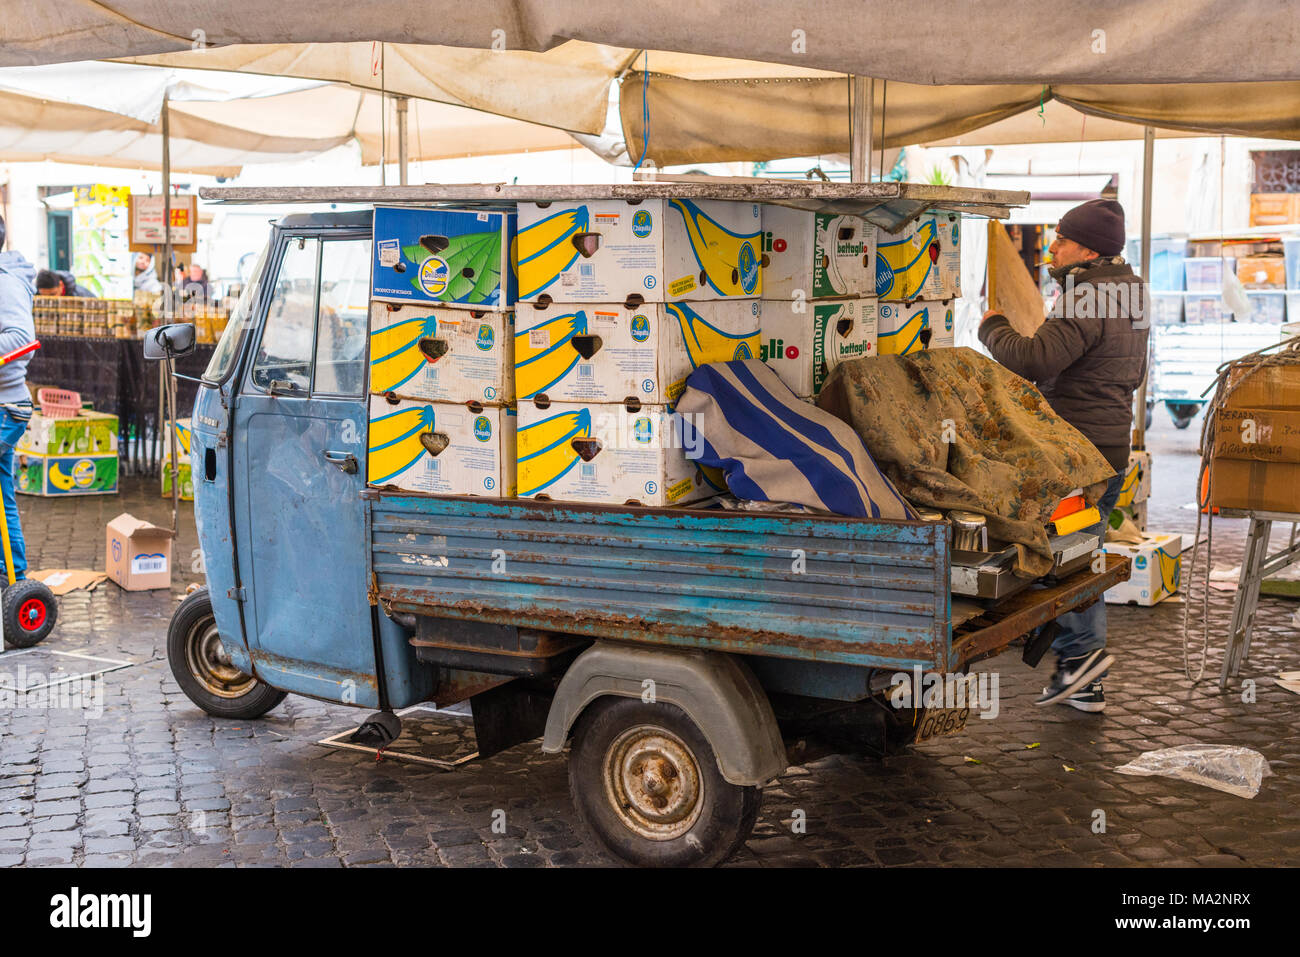 Aufräumen, Verpackung und Verladung Kisten auf einen piaggo Ape 3 wheeler van am Ende des Tages, am Campo de' Fiori, Rom, Latium, Italien. Stockfoto